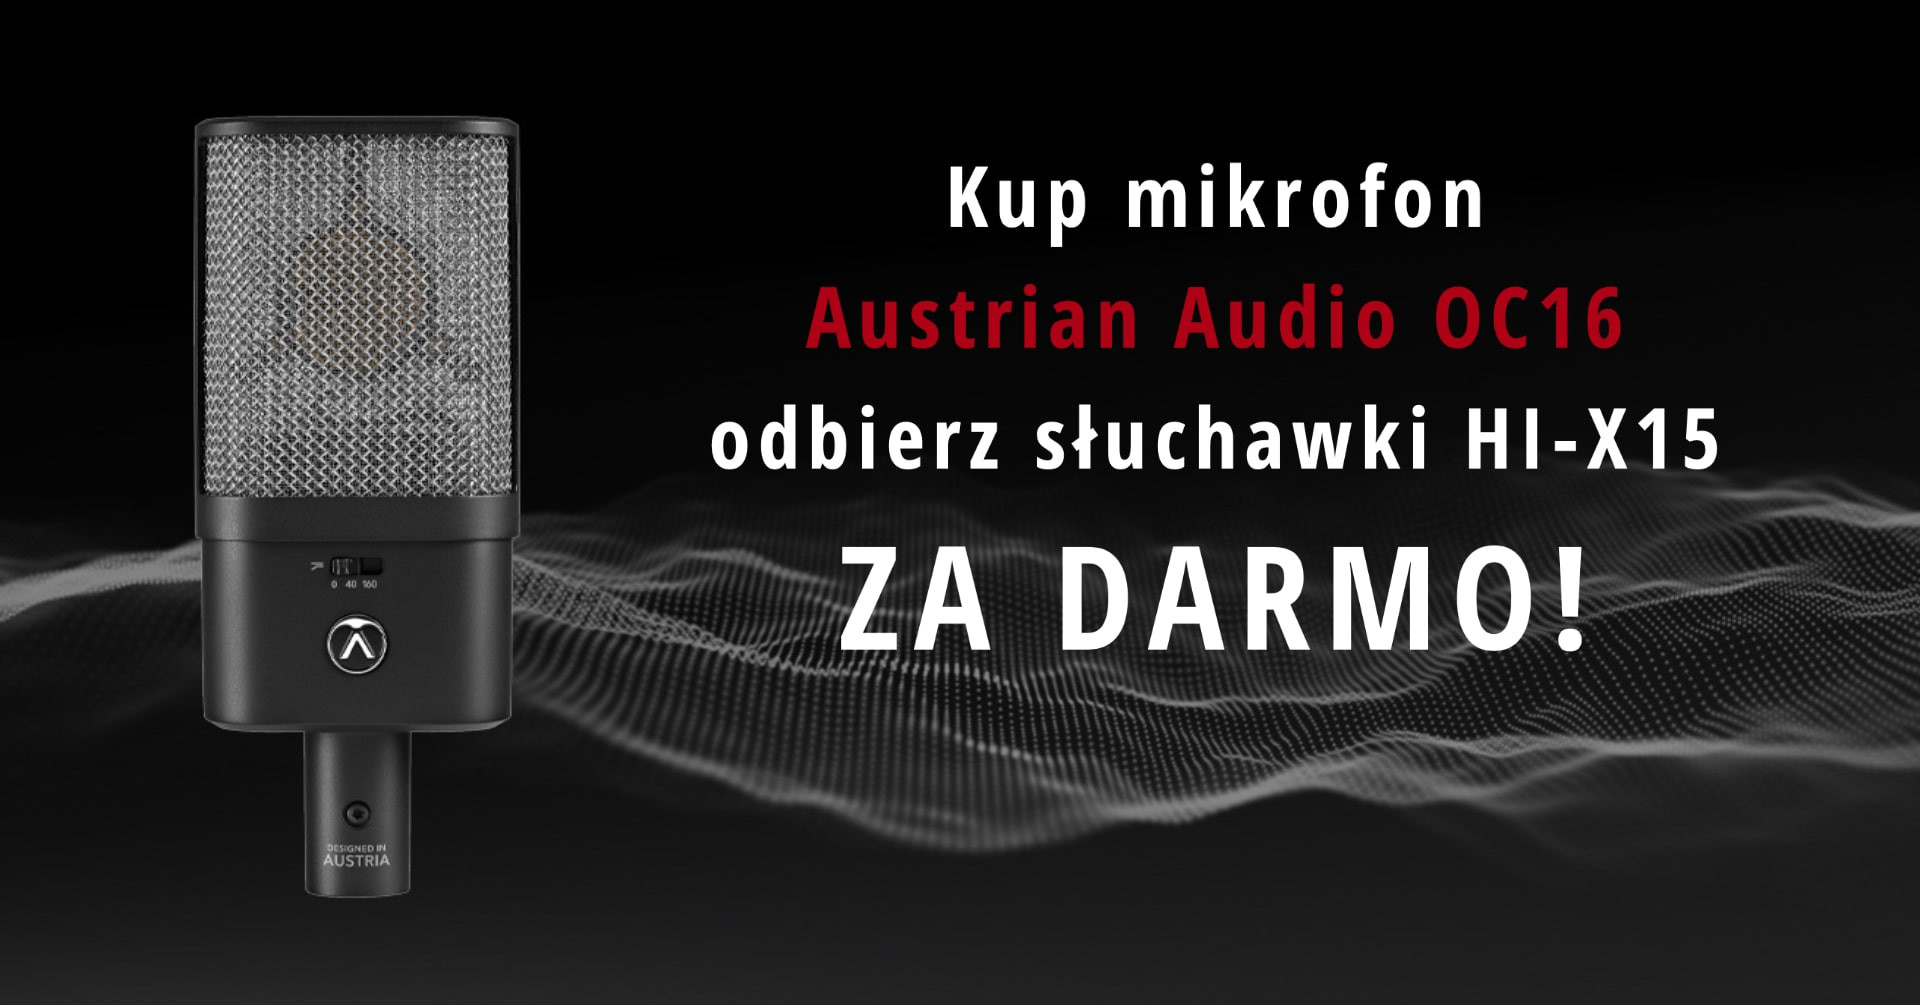 KUP mikrofon Austrian Audio OC16 i odbierz słuchawki HI-X15 za darmo!